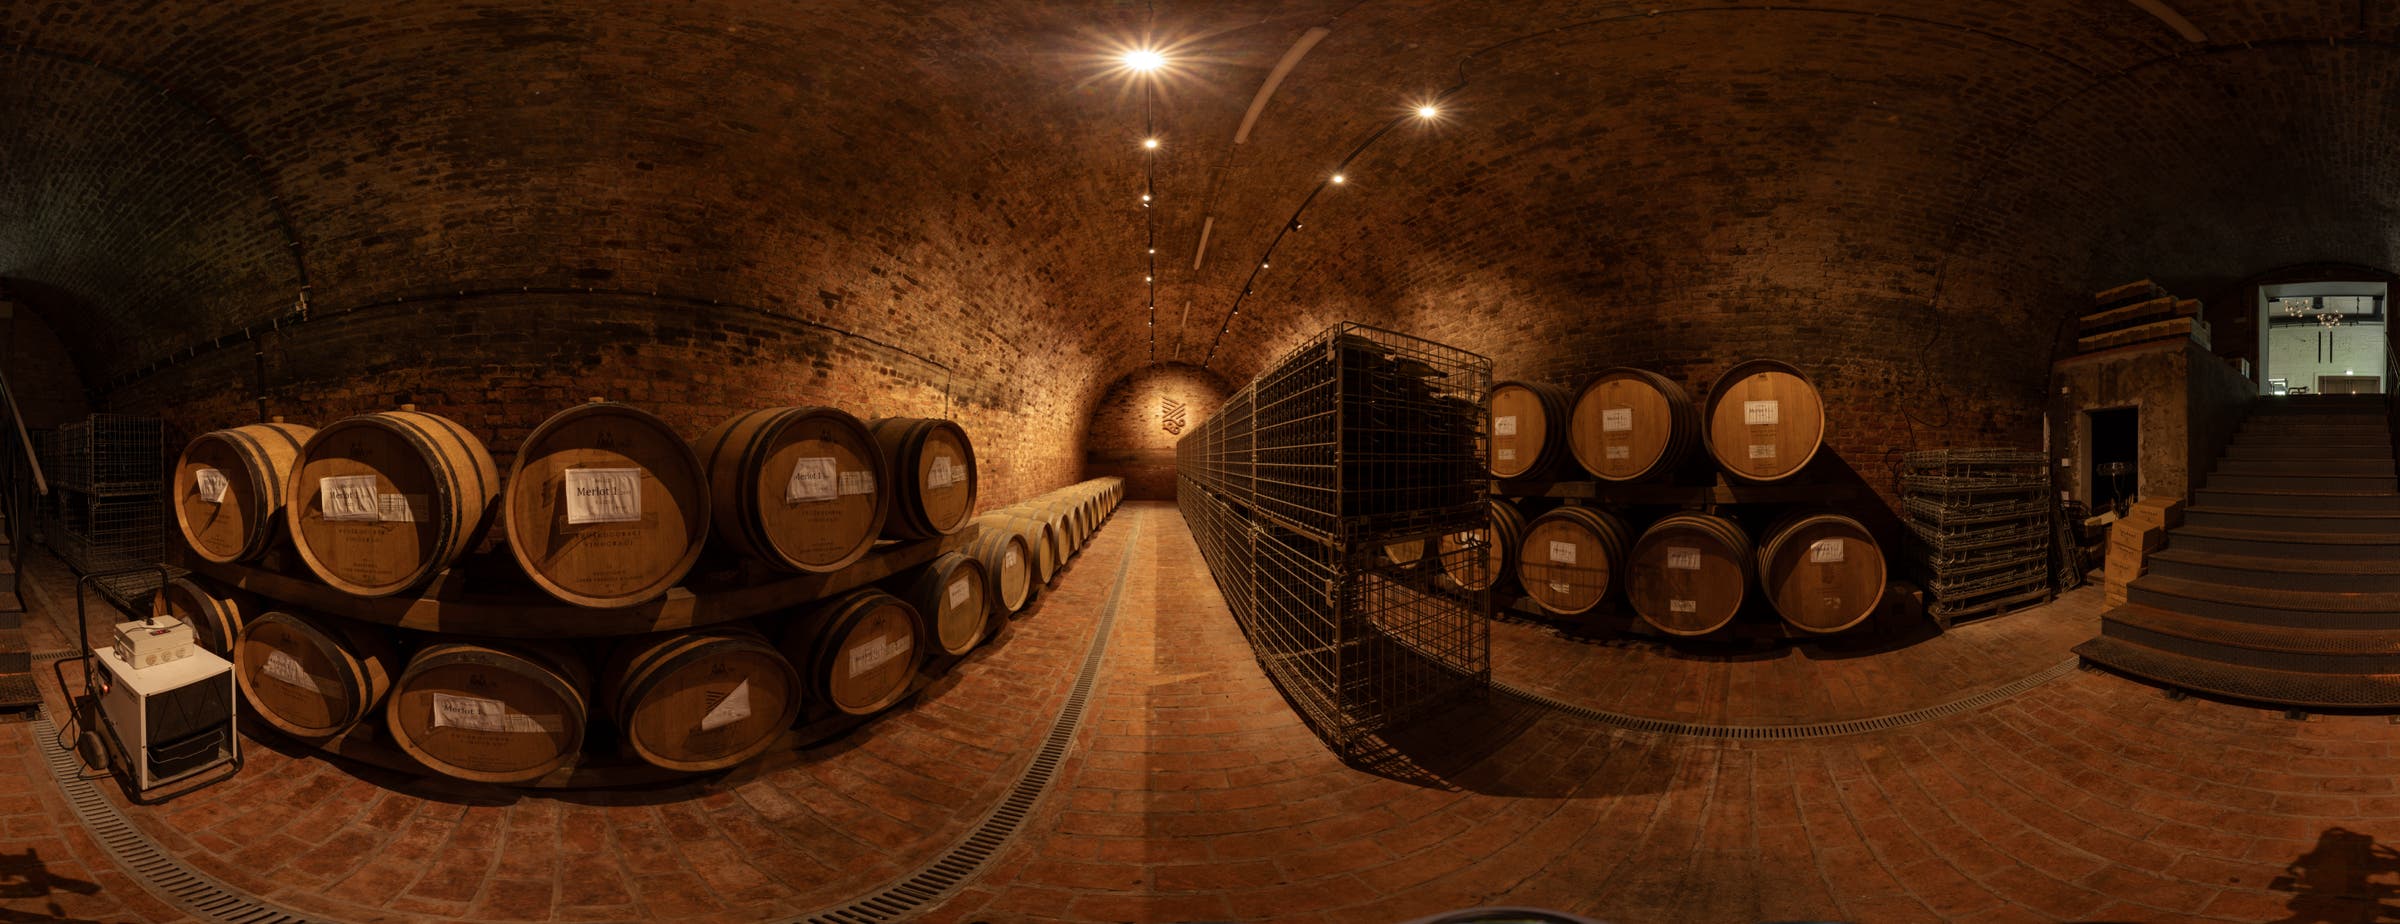 L'immagine mostra una vista a 360° di una cantina adibita allo stoccaggio delle botti lungo le pareti. Al centro della sala, lungo il corridoio, sono collocate cassette metalliche per la conservazione delle bottiglie di vino in vetro.